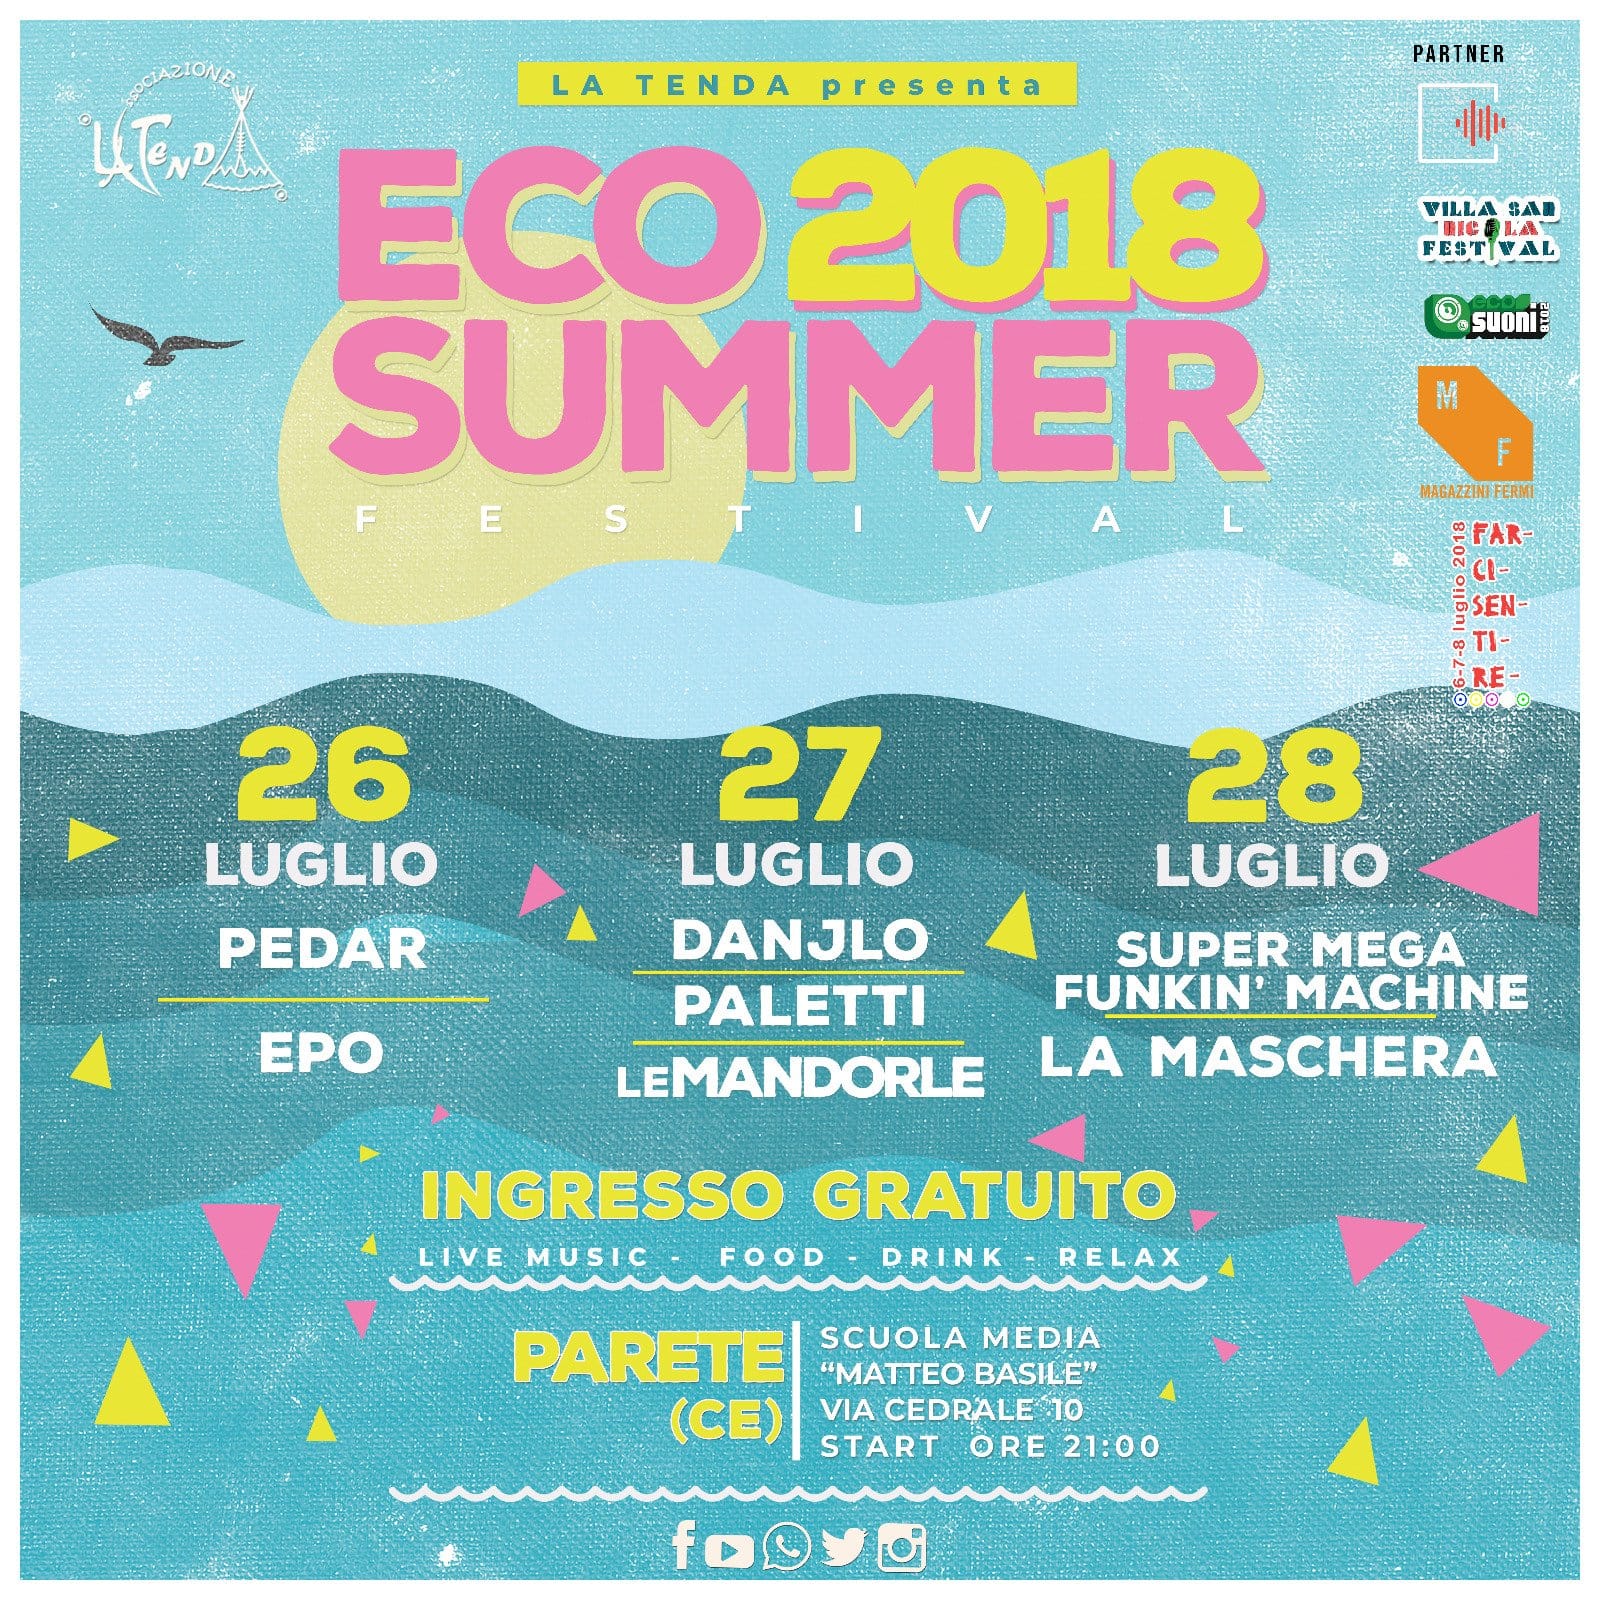 Eco Summer Festival 2018 a Parete in provincia di Caserta torna con tanti nomi della musica indie e funkie